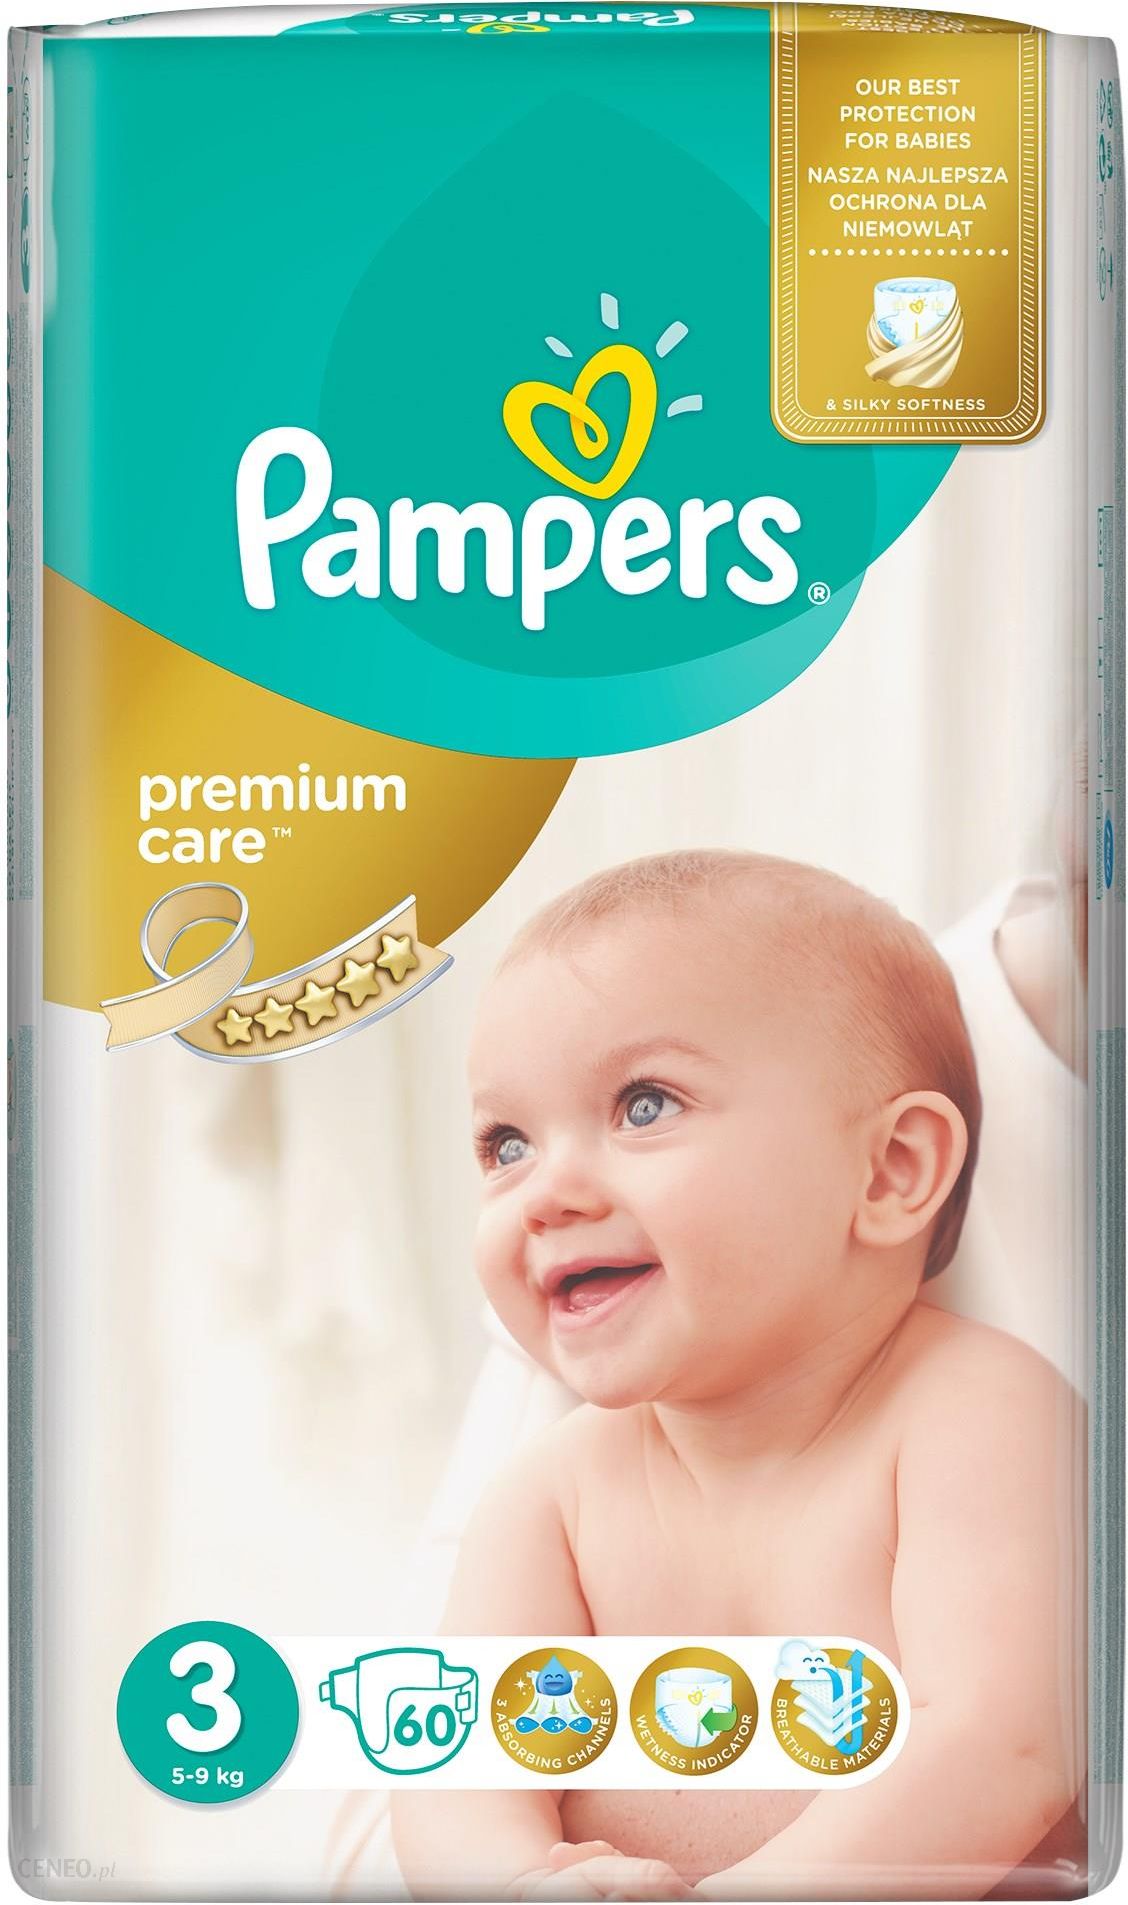 Pampers Pieluchy Premium Care rozmiar 3, 60 pieluszek